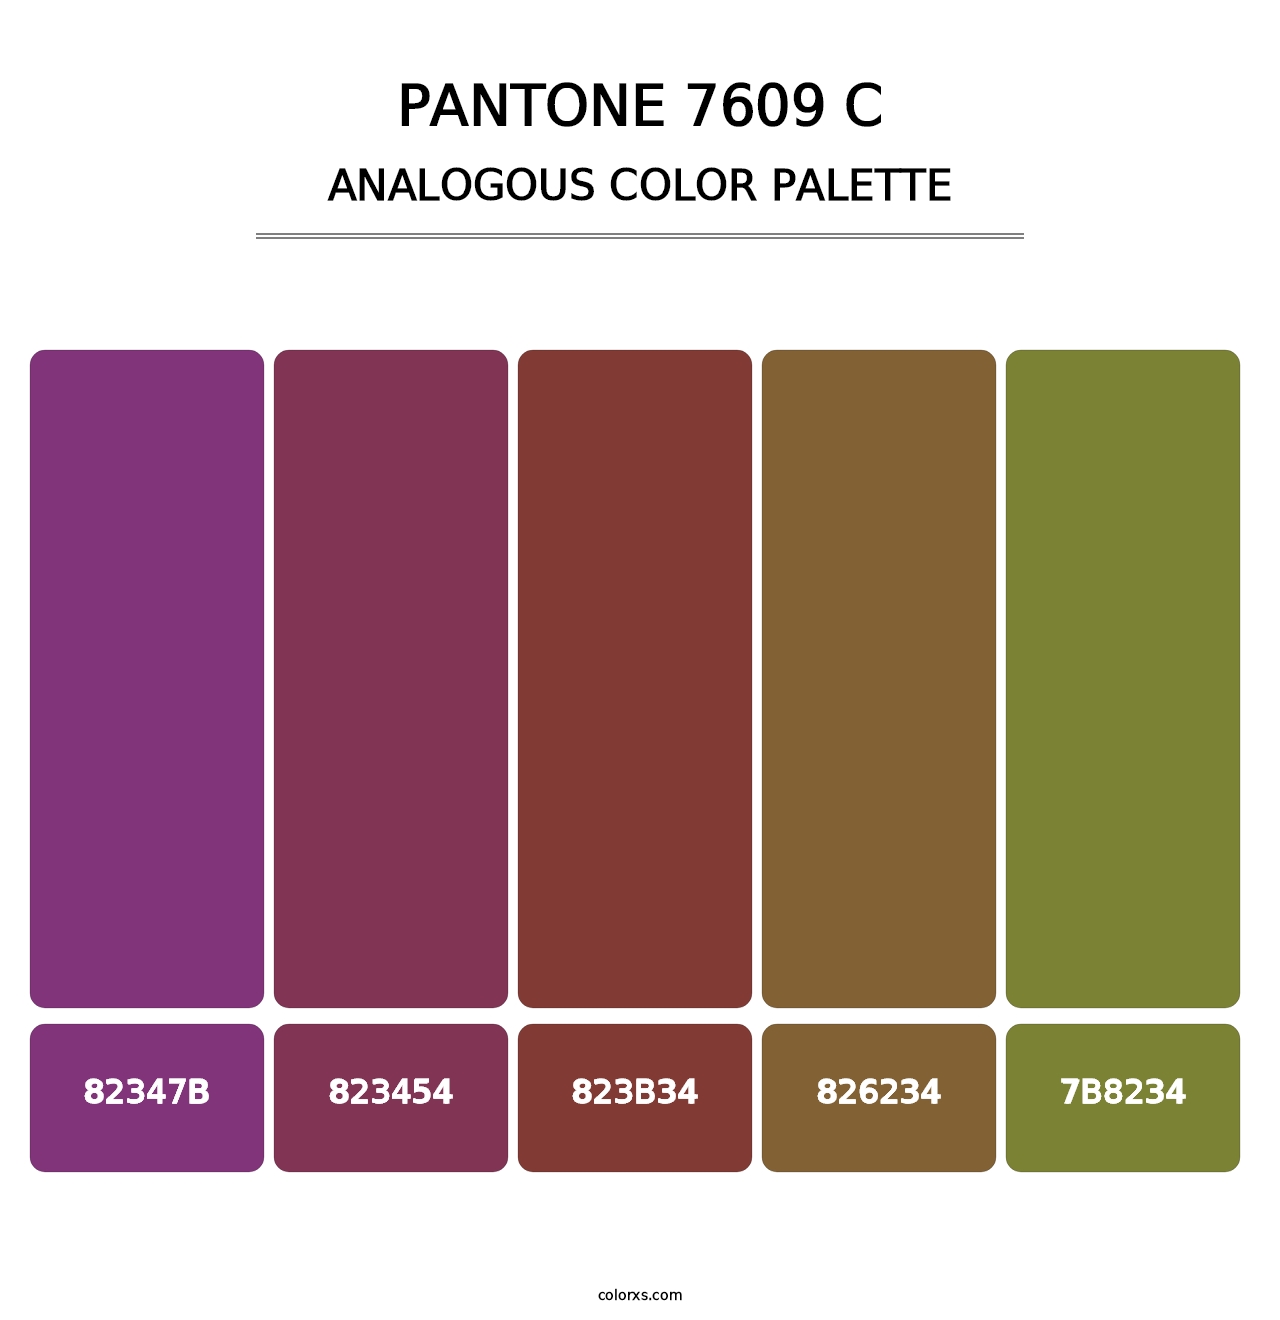 PANTONE 7609 C - Analogous Color Palette